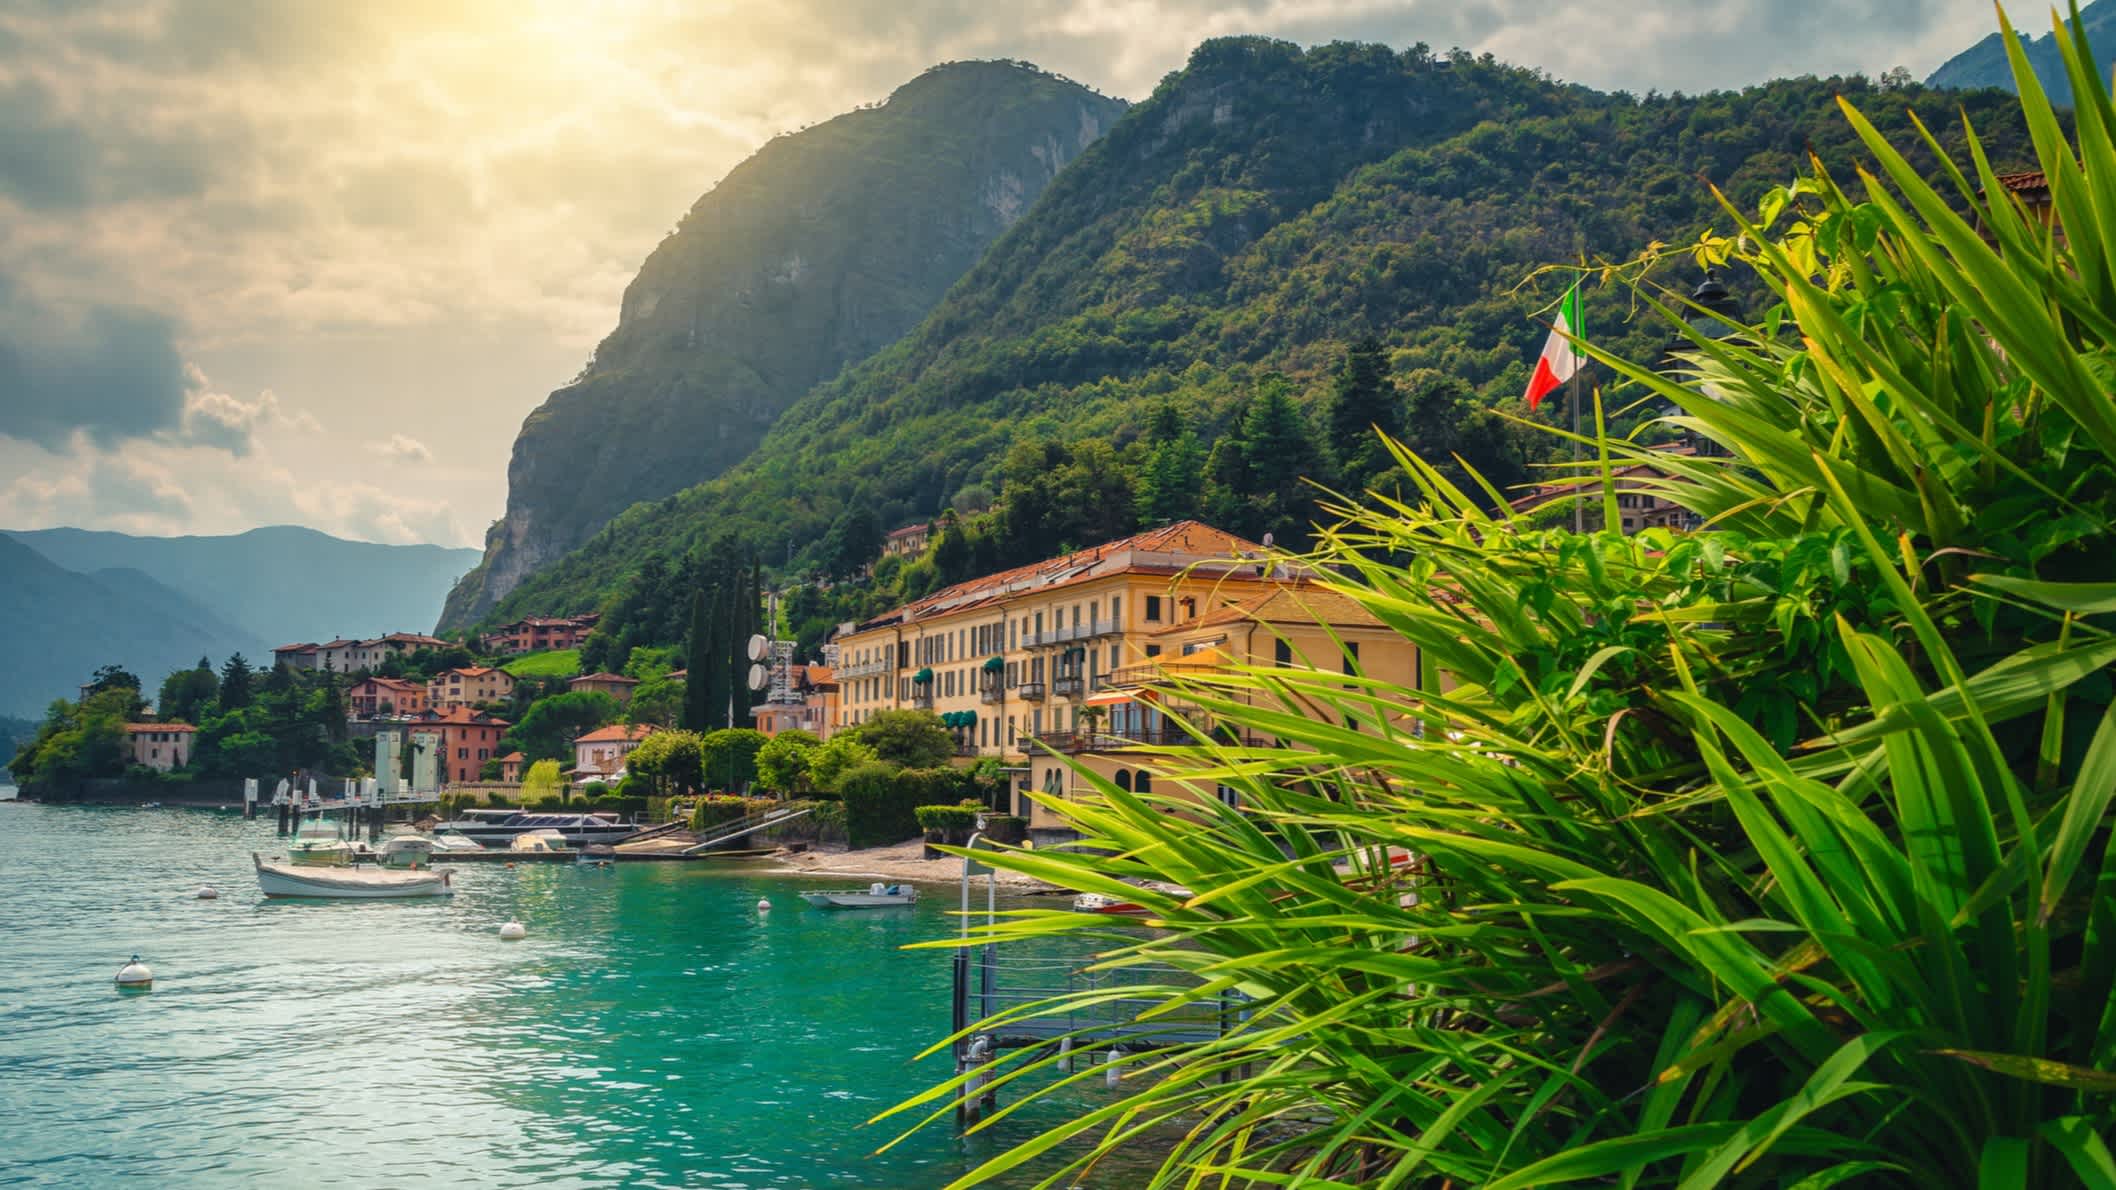 Blick auf dem Ufer von Comer See in Menaggio, Lombardei, Italien.